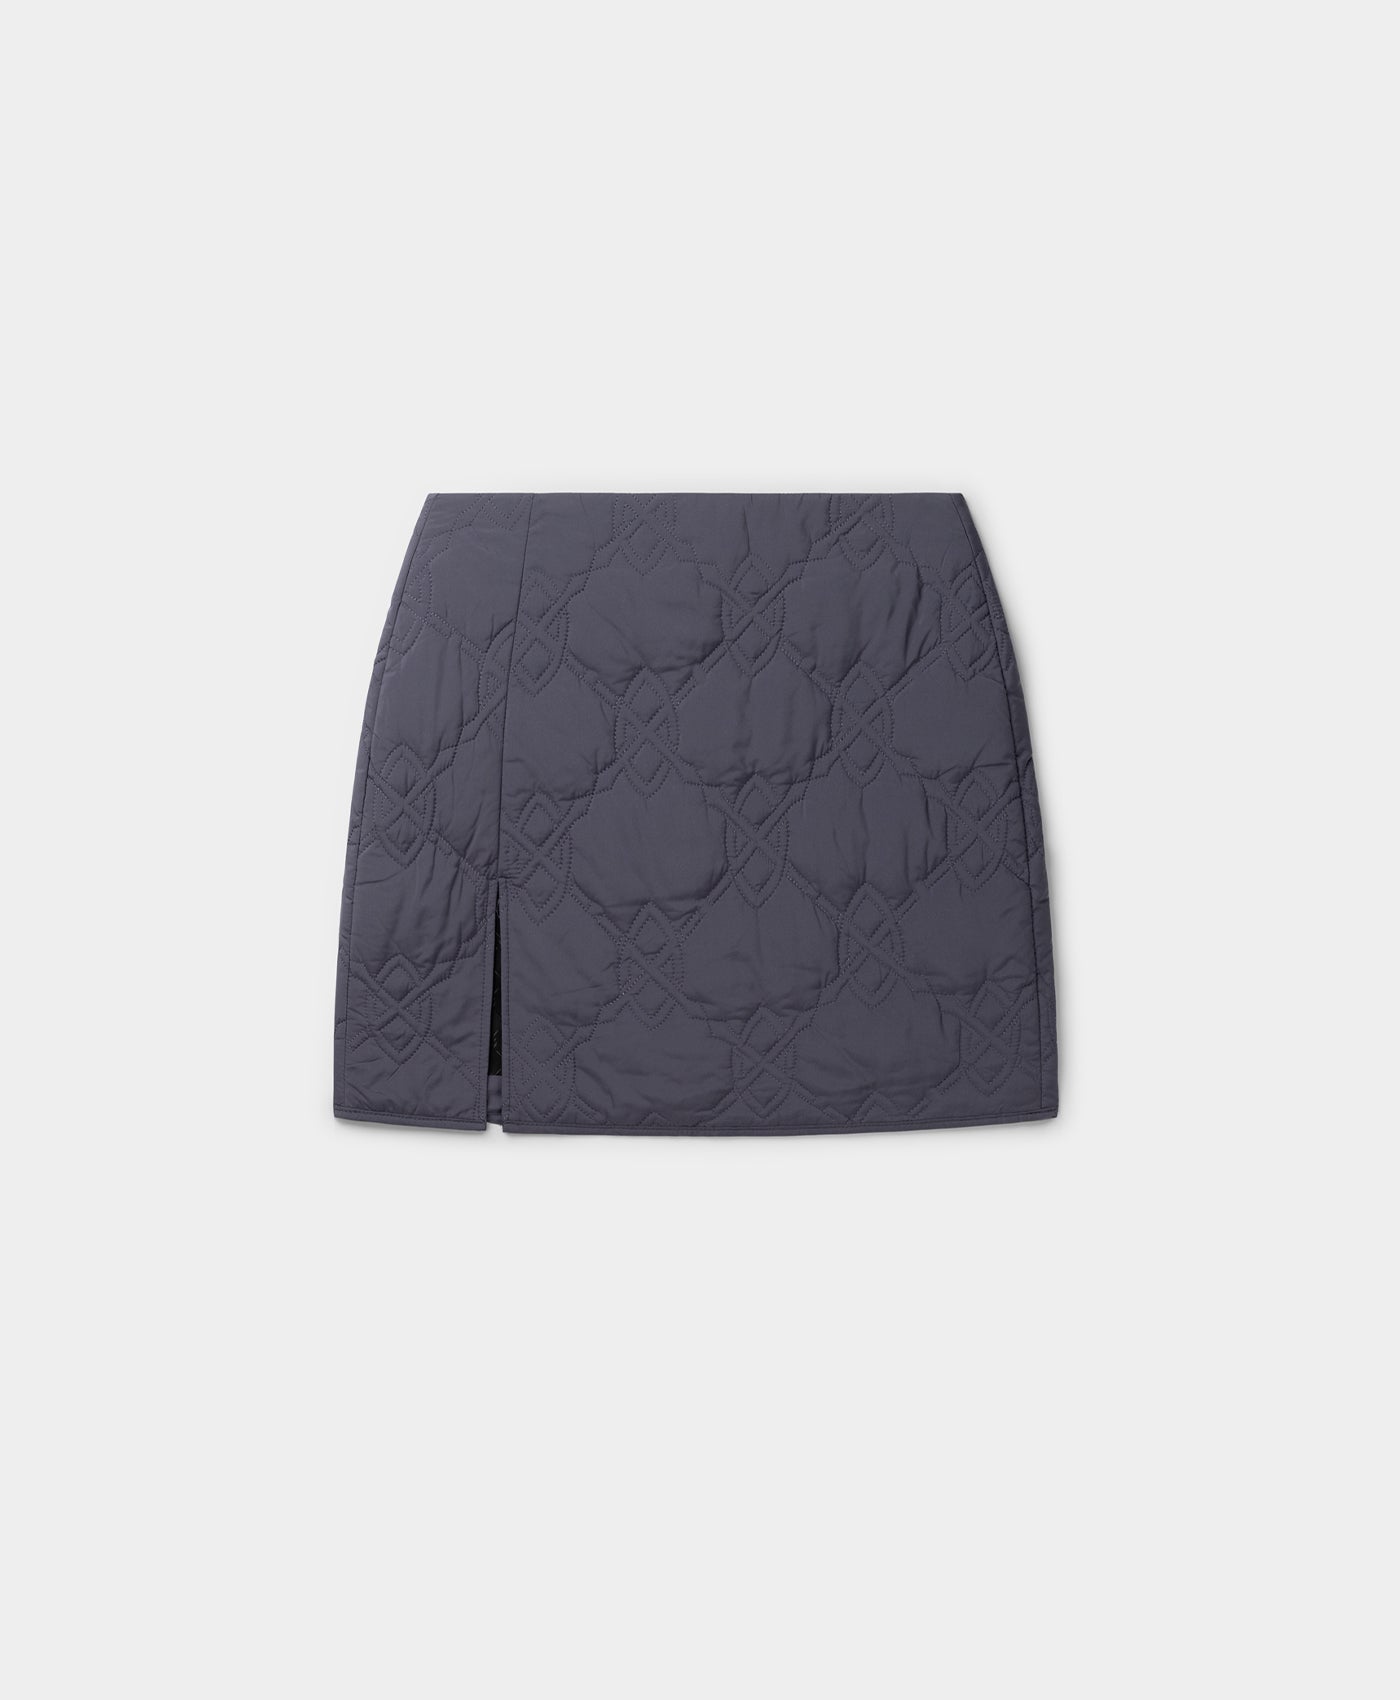 DP - Odyssey Blue Philipa Skirt - Packshot - Front